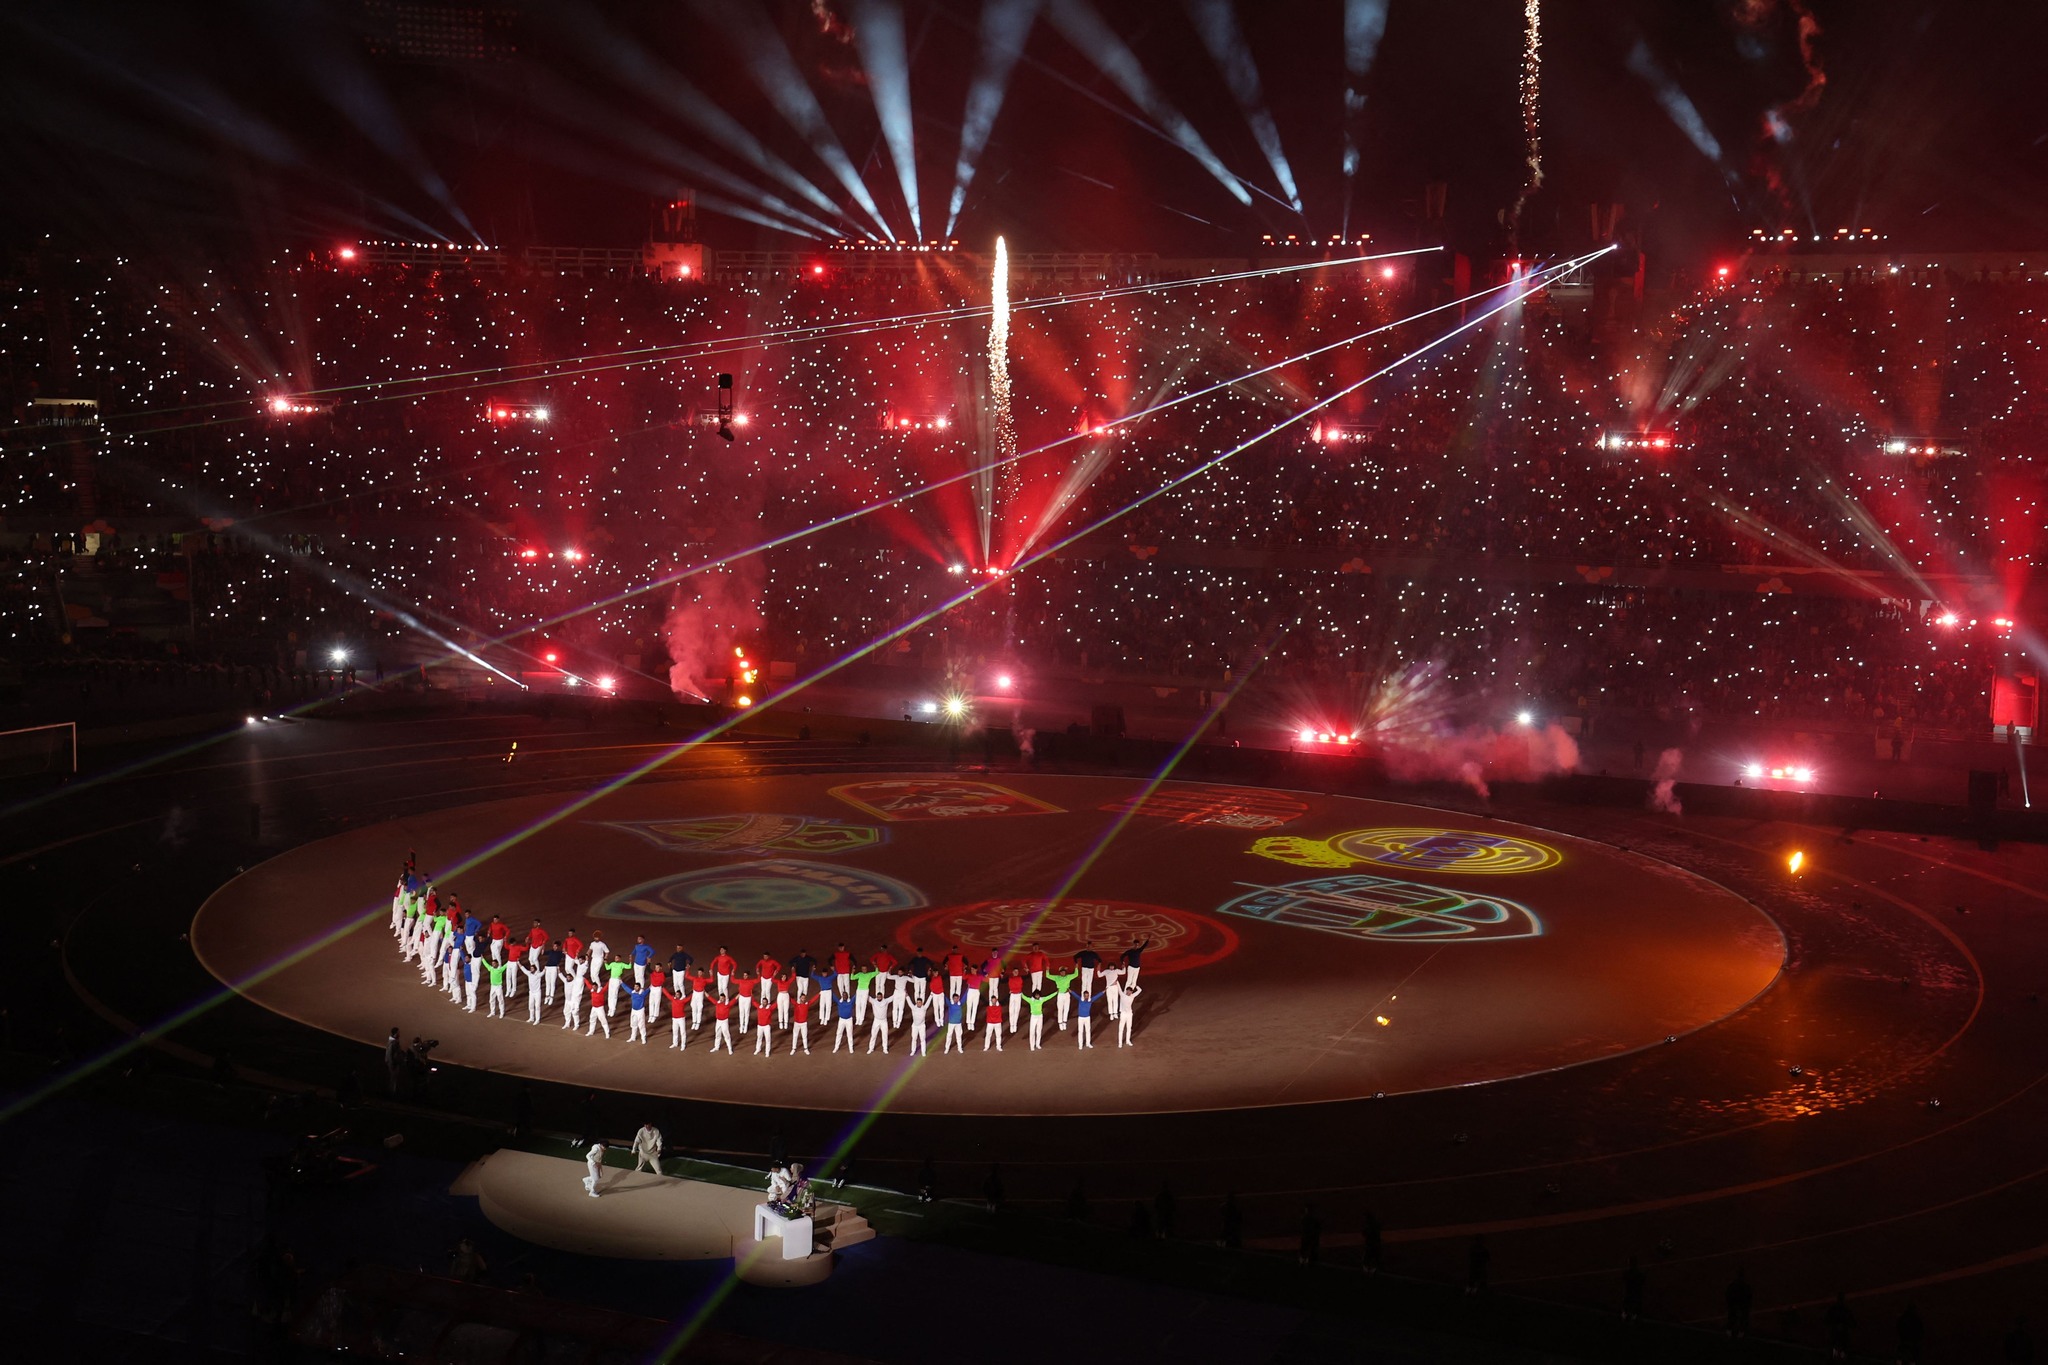 شاهد .. المغرب يبهر بحفل إفتتاح أسطوري في كأس العالم للأندية